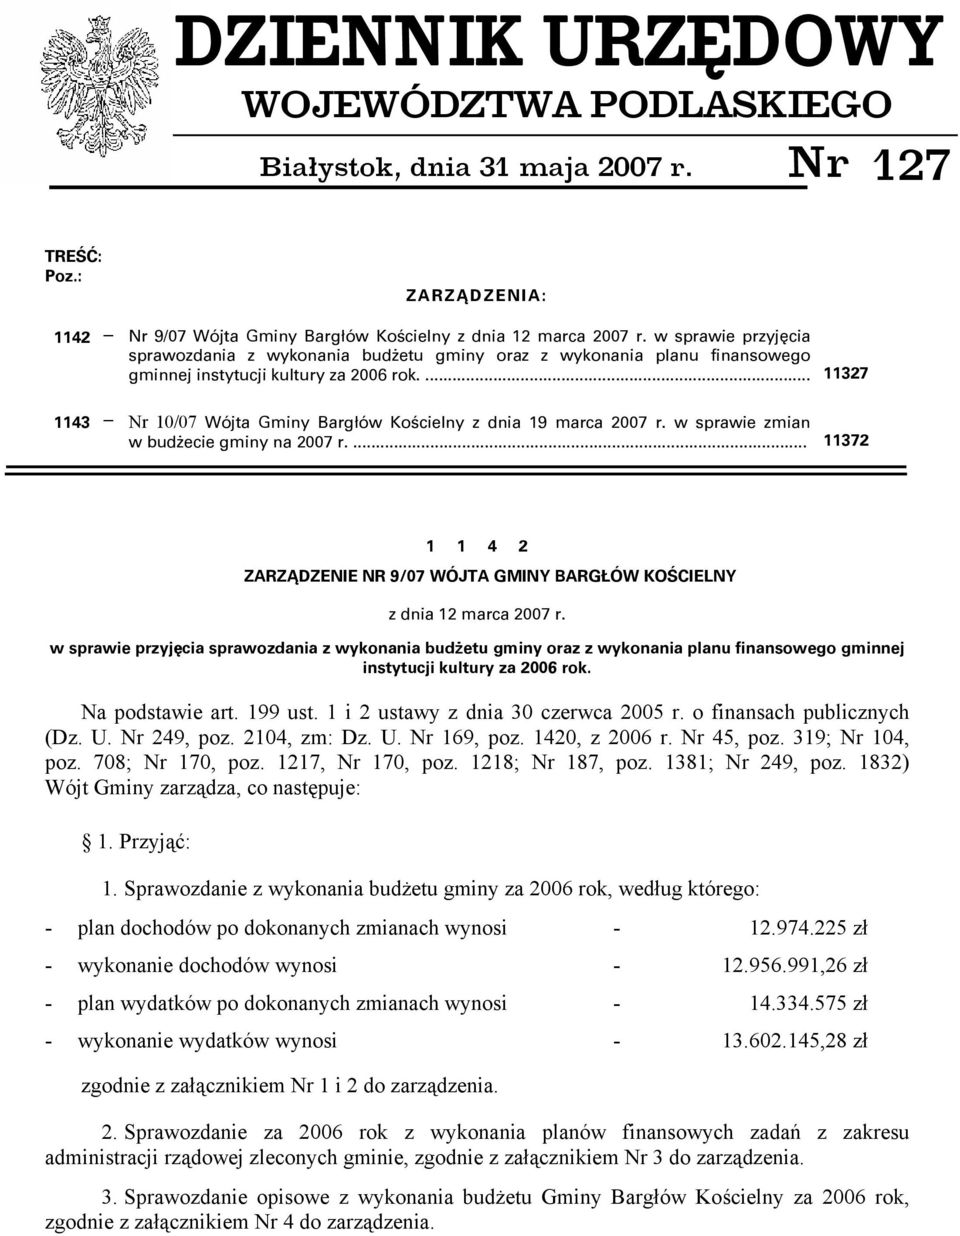 ... 11327 1143 Nr 10/07 Wójta Gminy Bargłów Kościelny z dnia 19 marca 2007 r. w sprawie zmian w budżecie gminy na 2007 r.